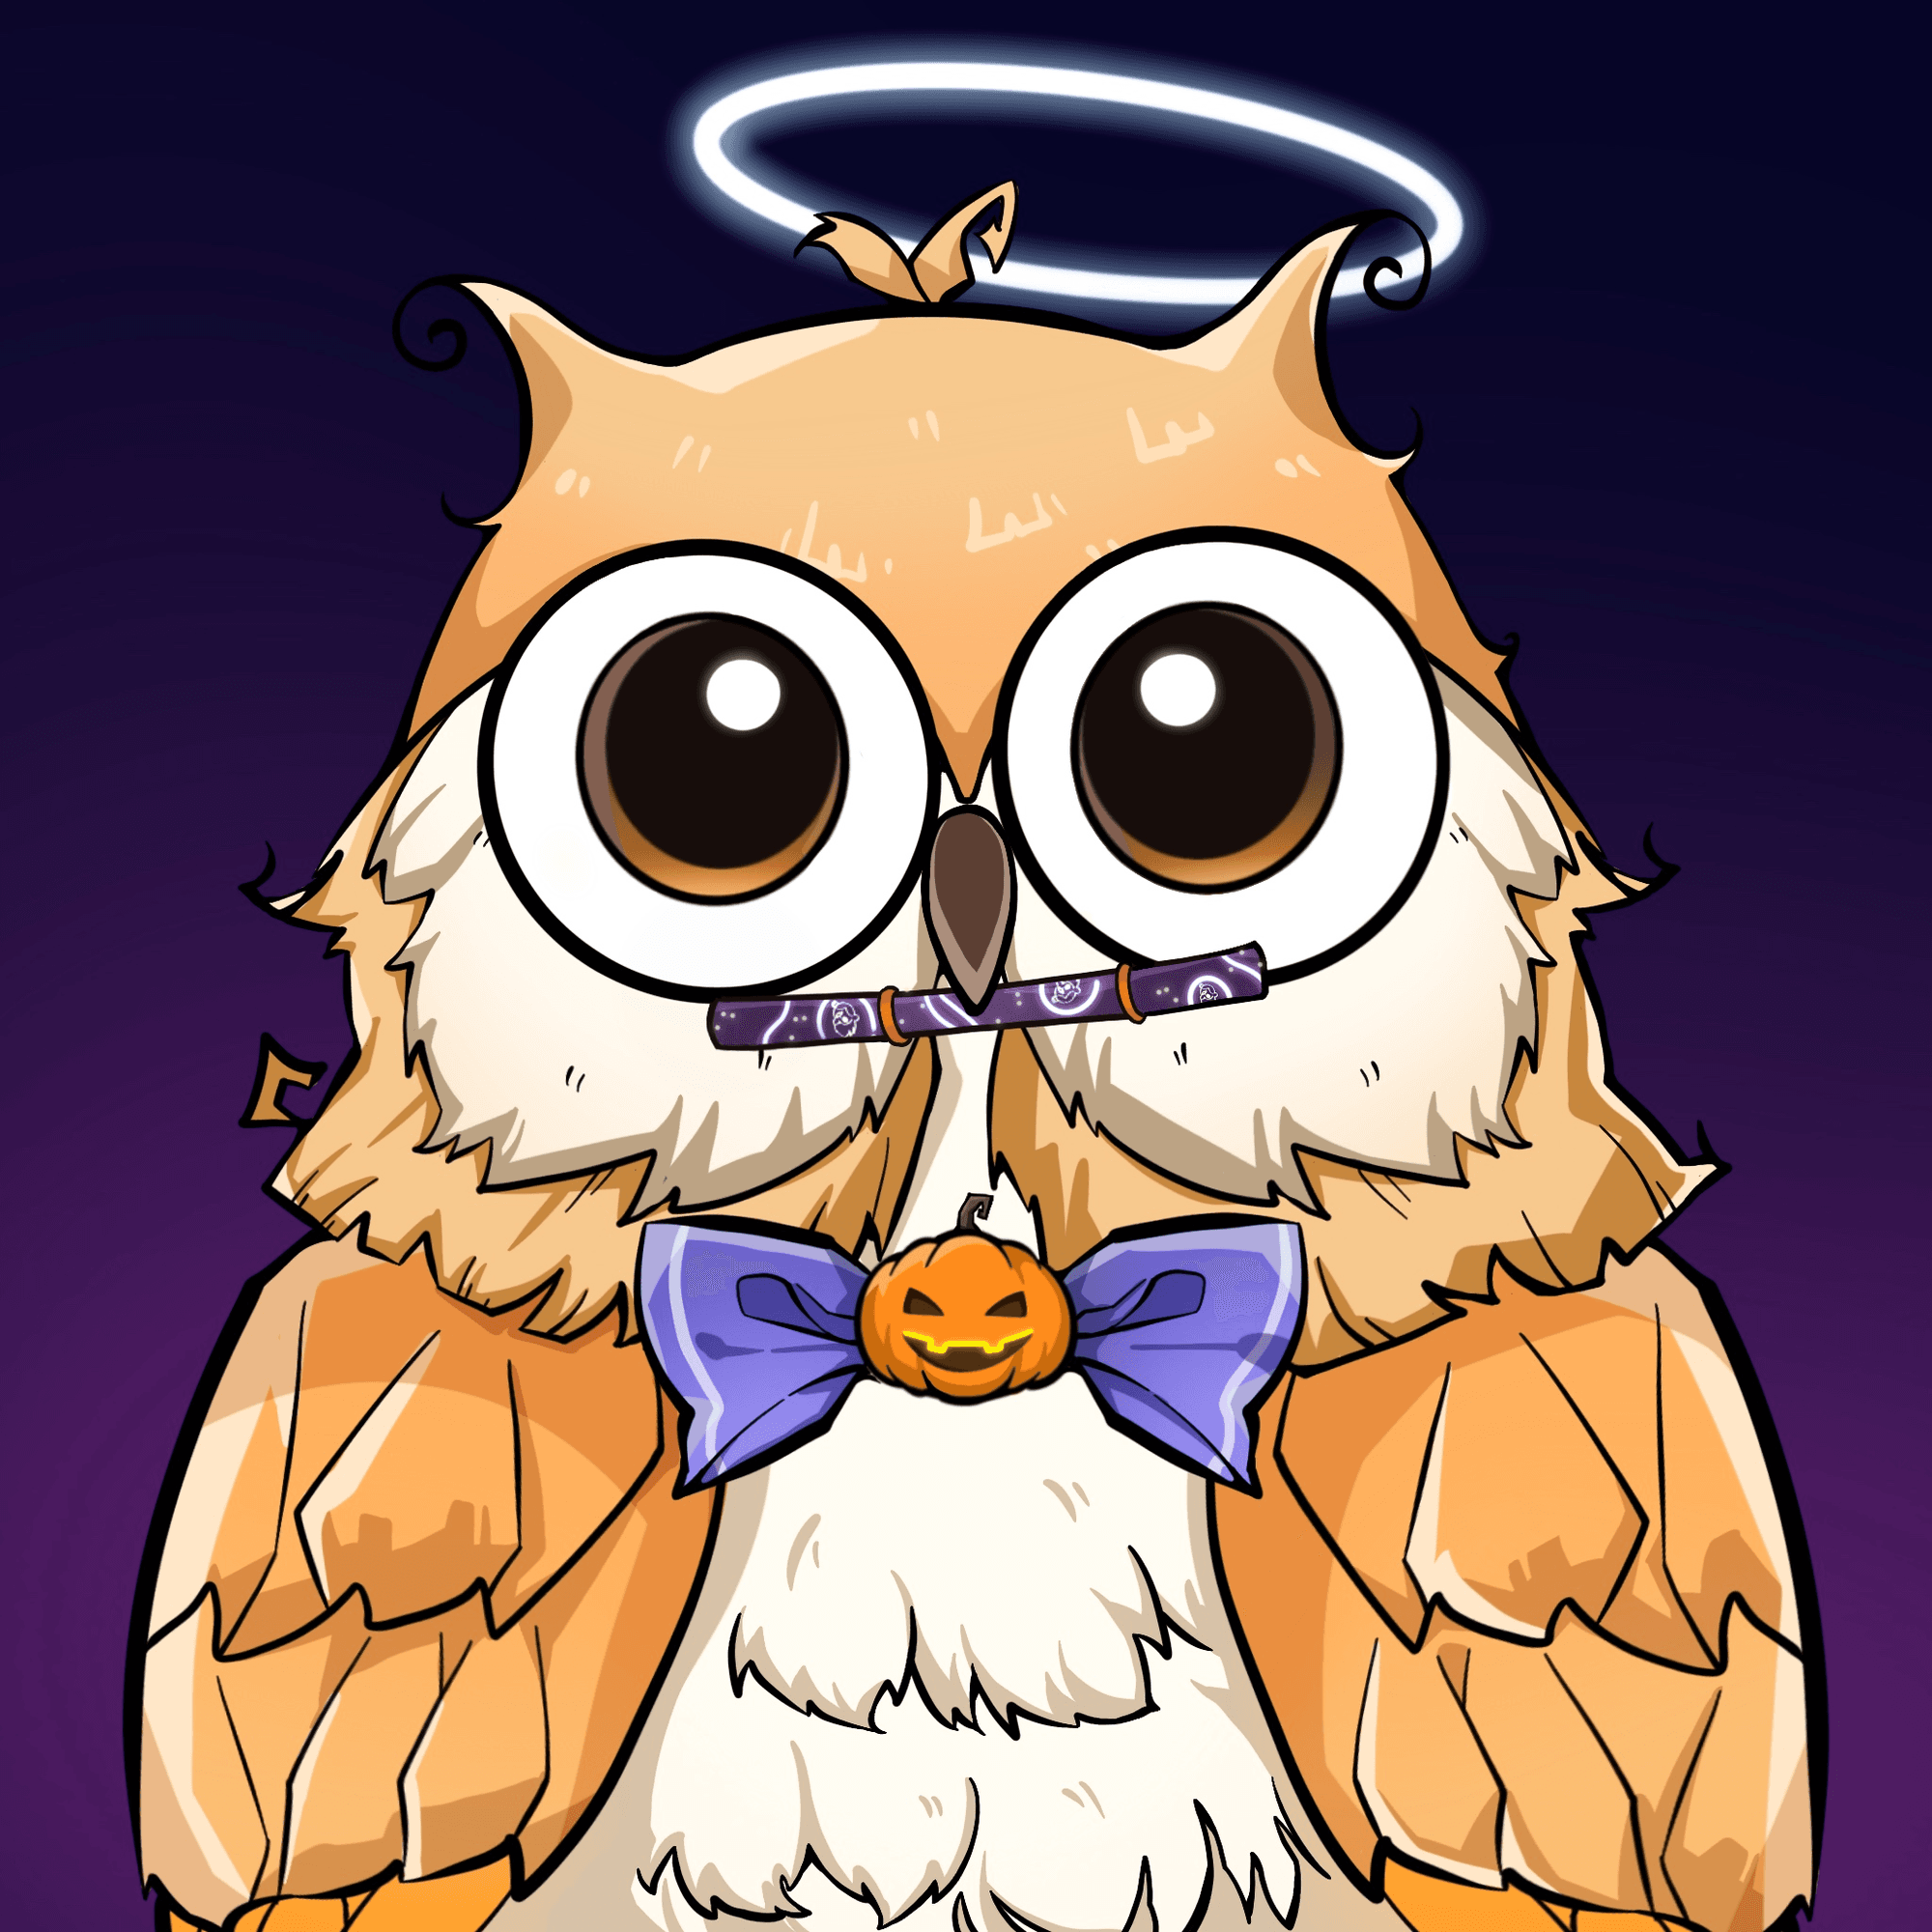 hello-owl-hello-owl-official-opensea